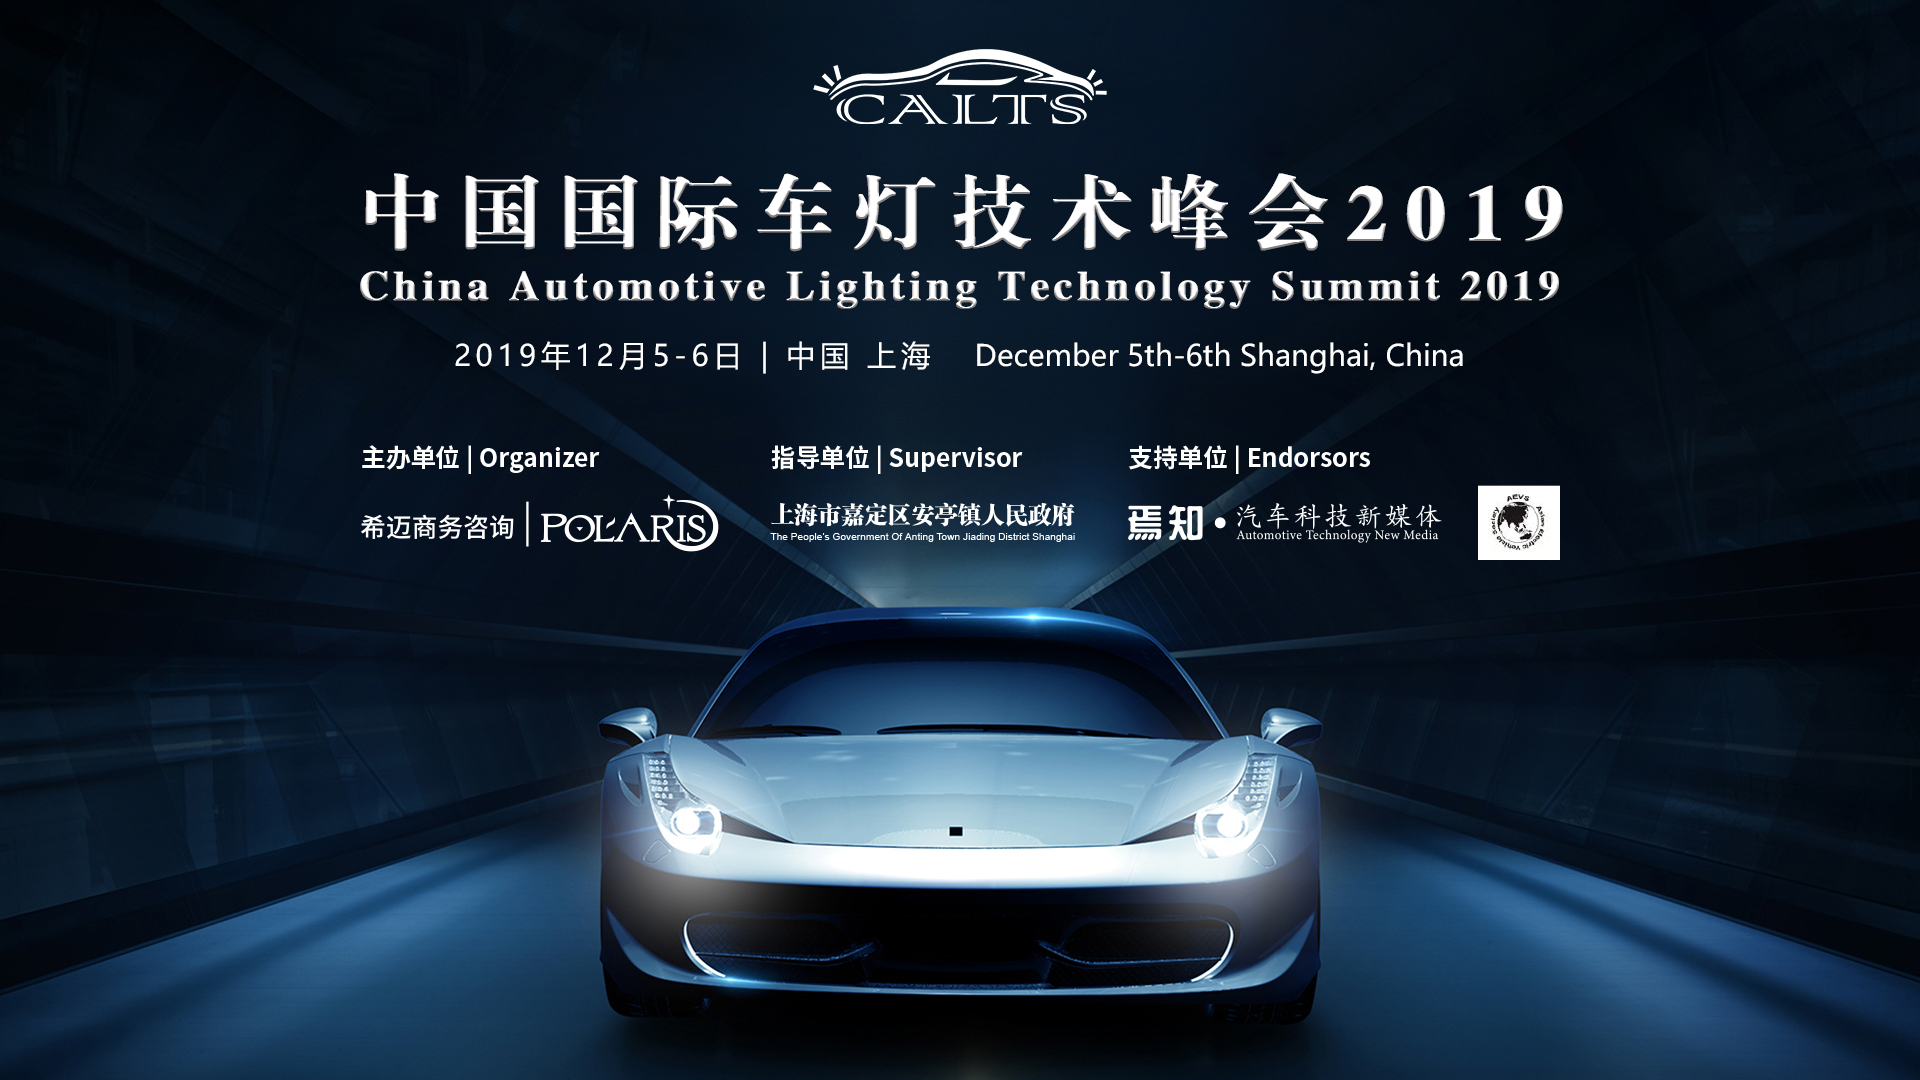 中国国际车灯技术峰会2019